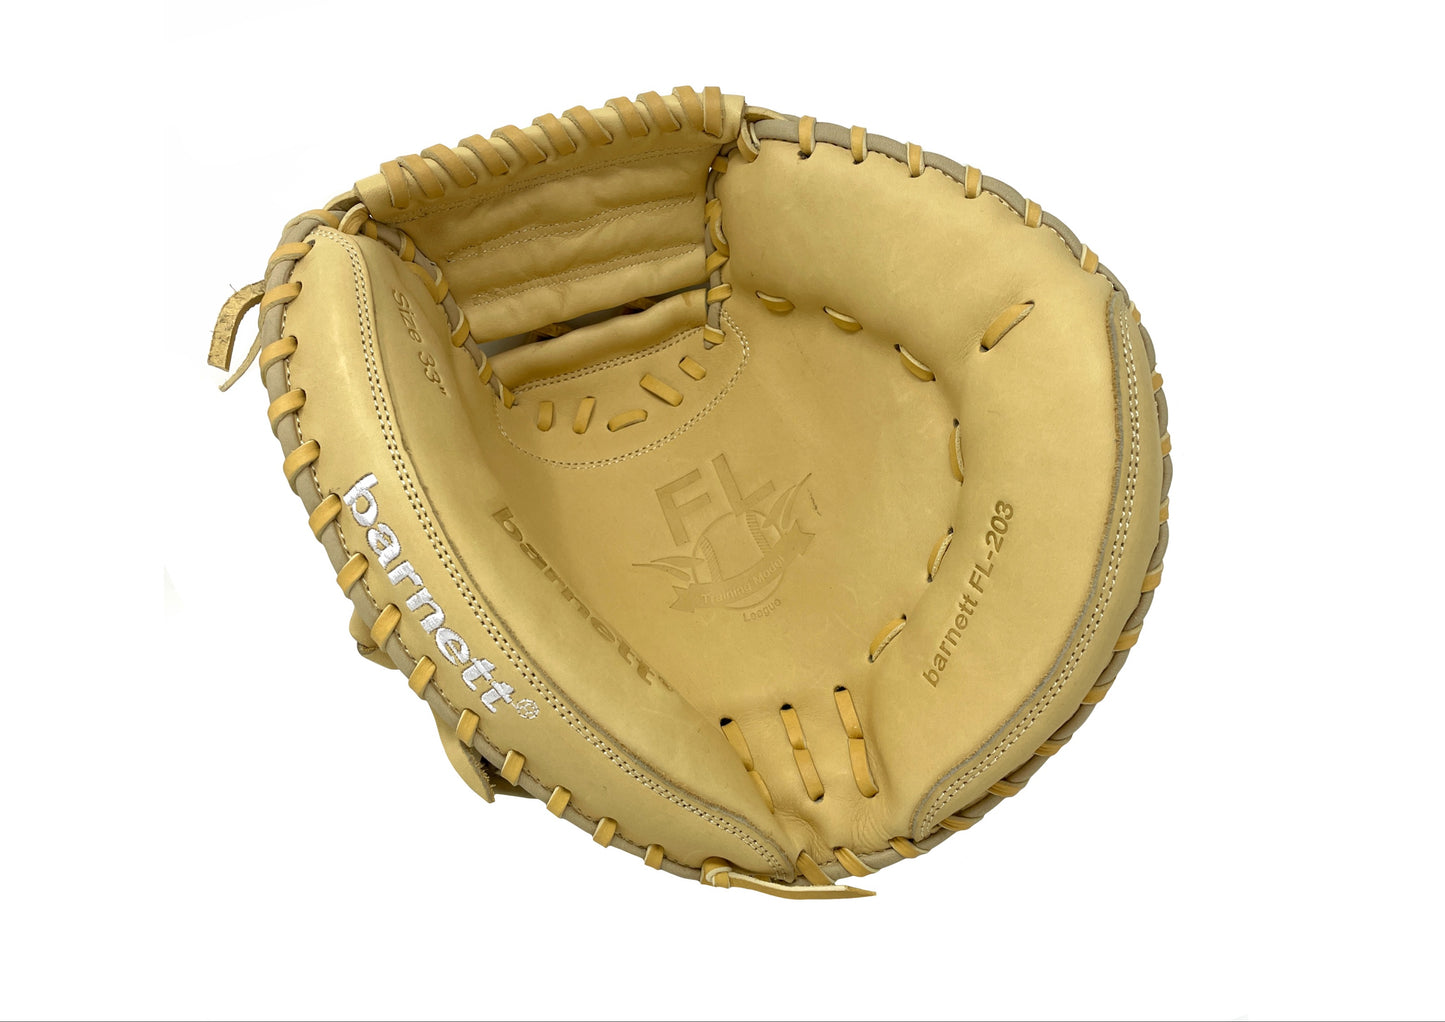 FL-203 gant de softball cuir haute qualité catcher, beige